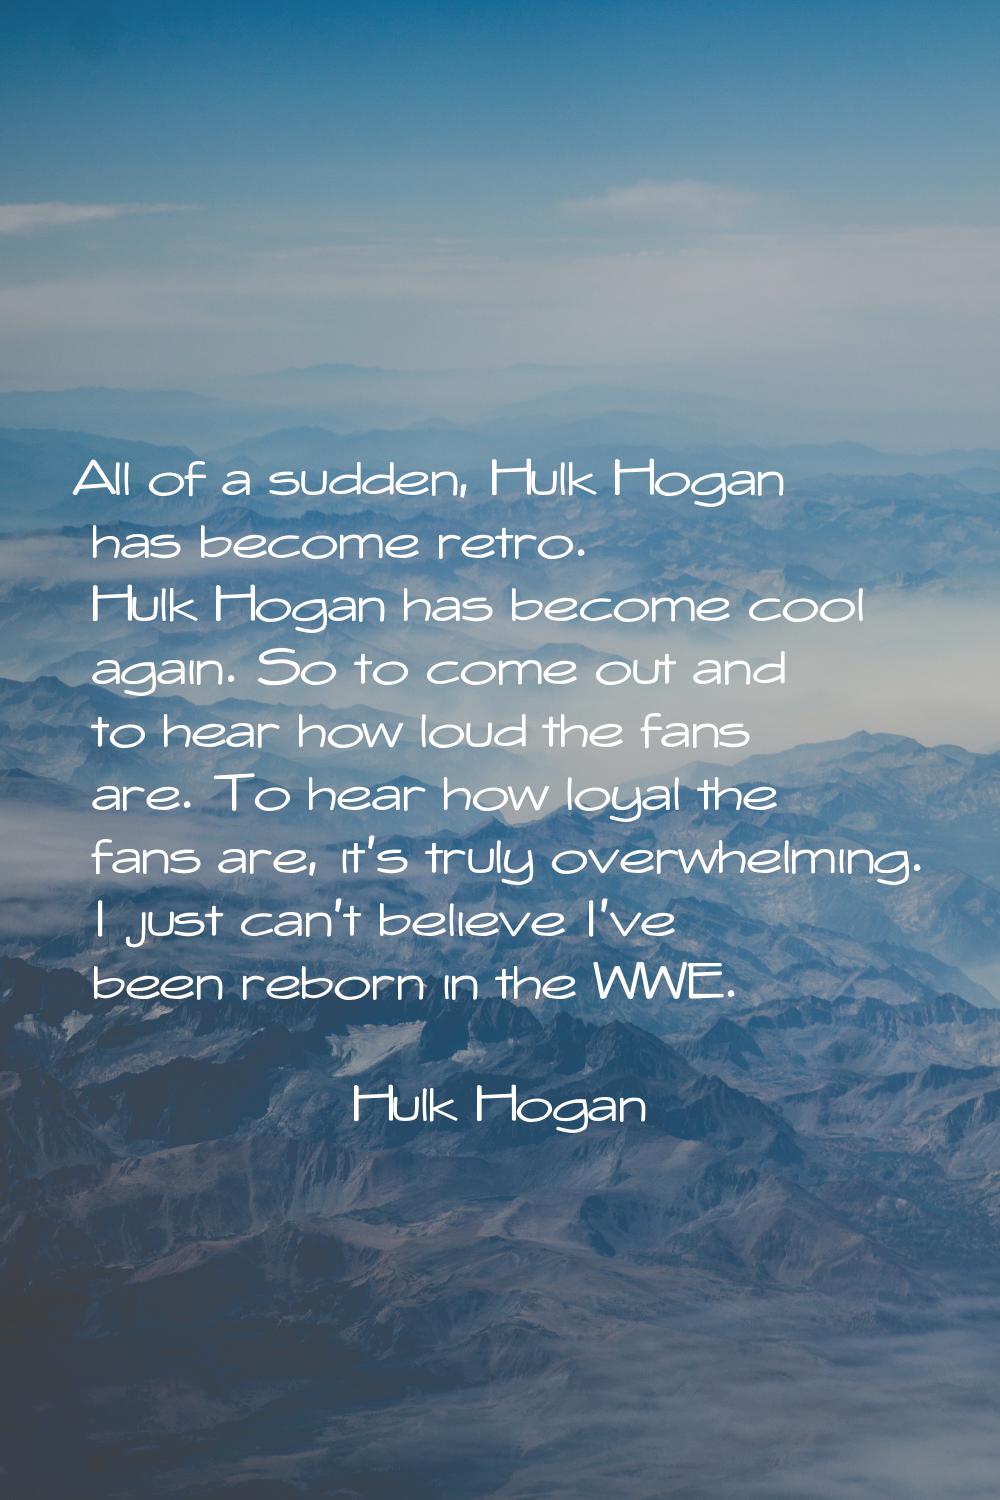 All of a sudden, Hulk Hogan has become retro. Hulk Hogan has become cool again. So to come out and 